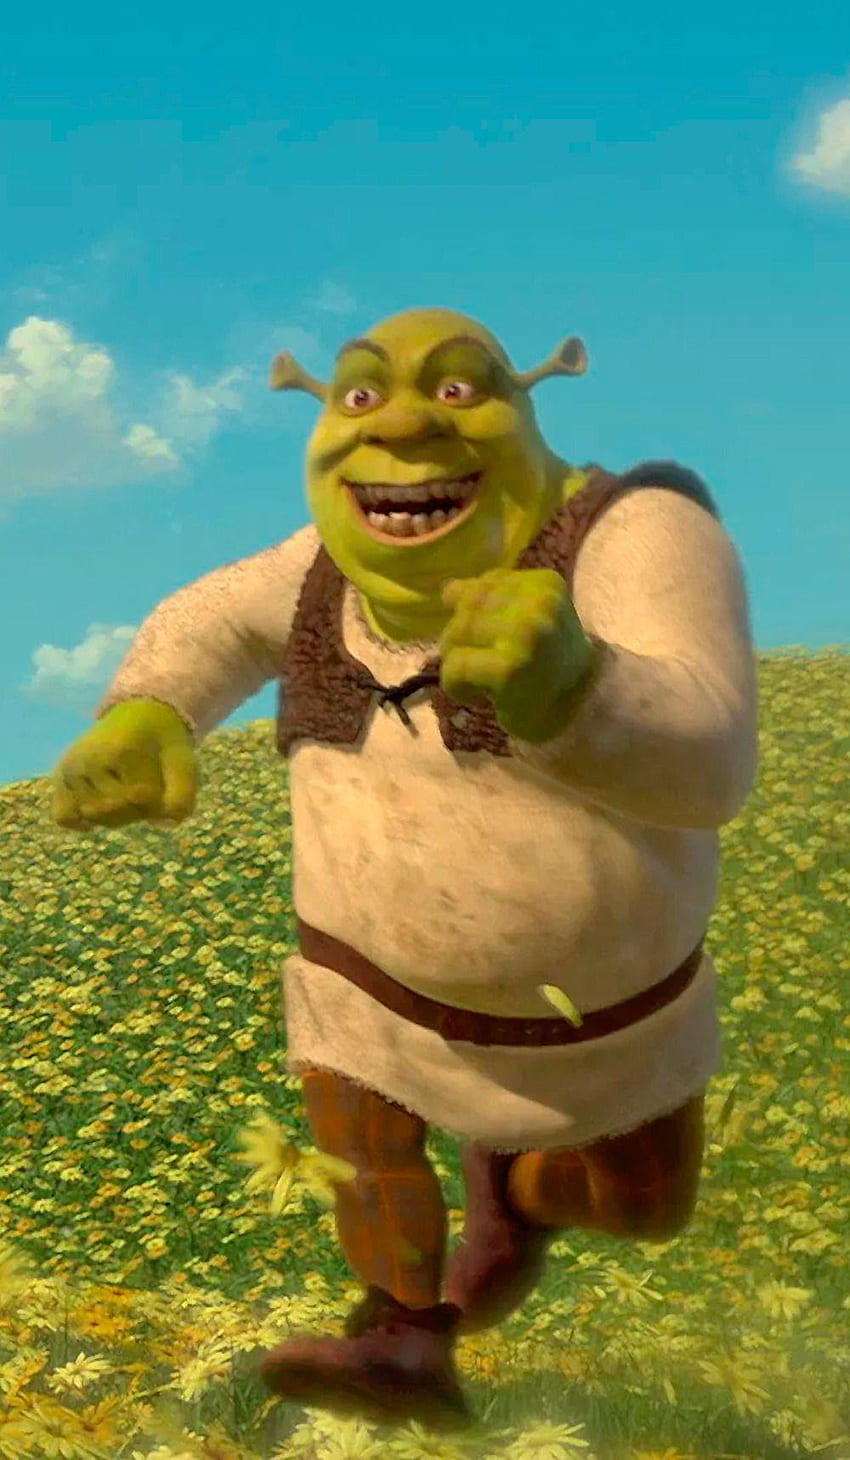 Create meme shrek background, Shrek , meme background - Pictures